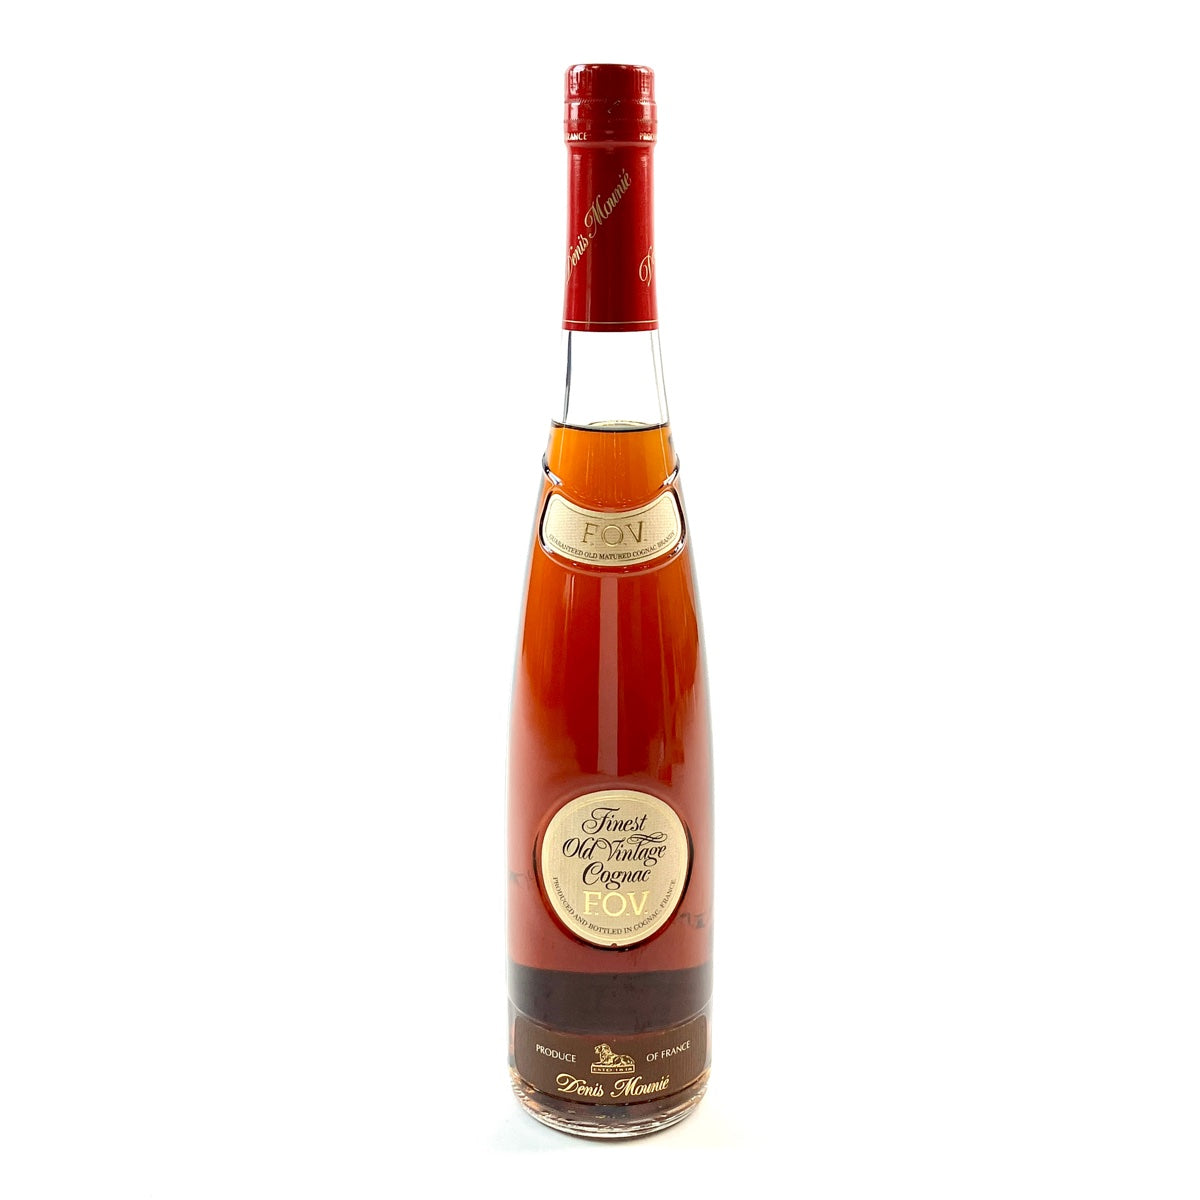 ドゥニ ムニエ Denis Mounie Finest Old Vintage Cognac F.O.V. ブランデー コニャック 【古酒】